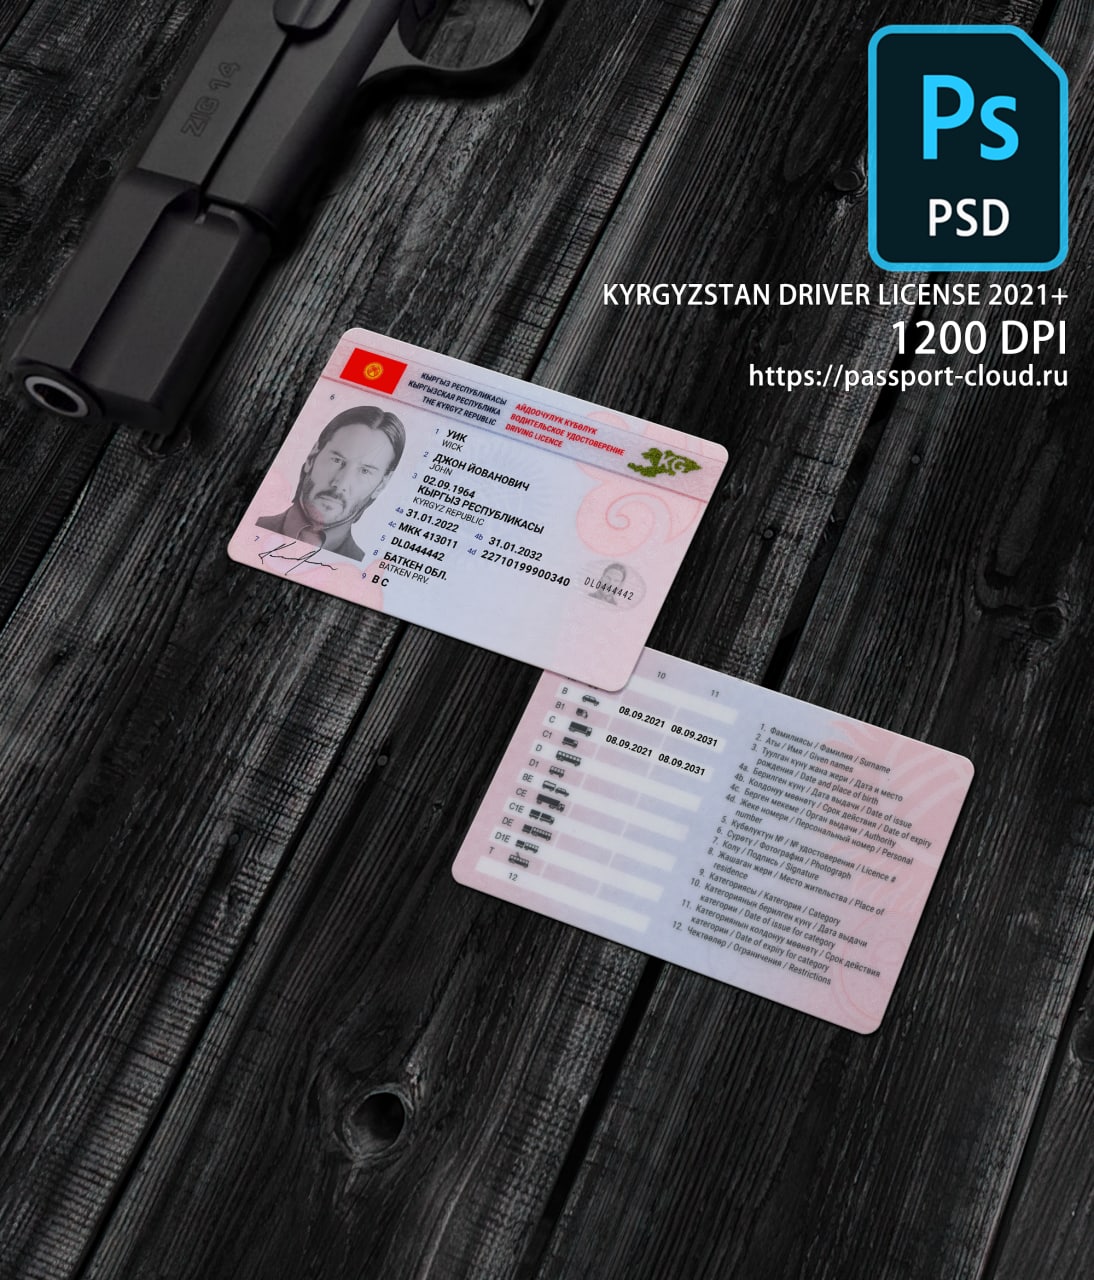 Kyrgyzstan Driver License 2021+1